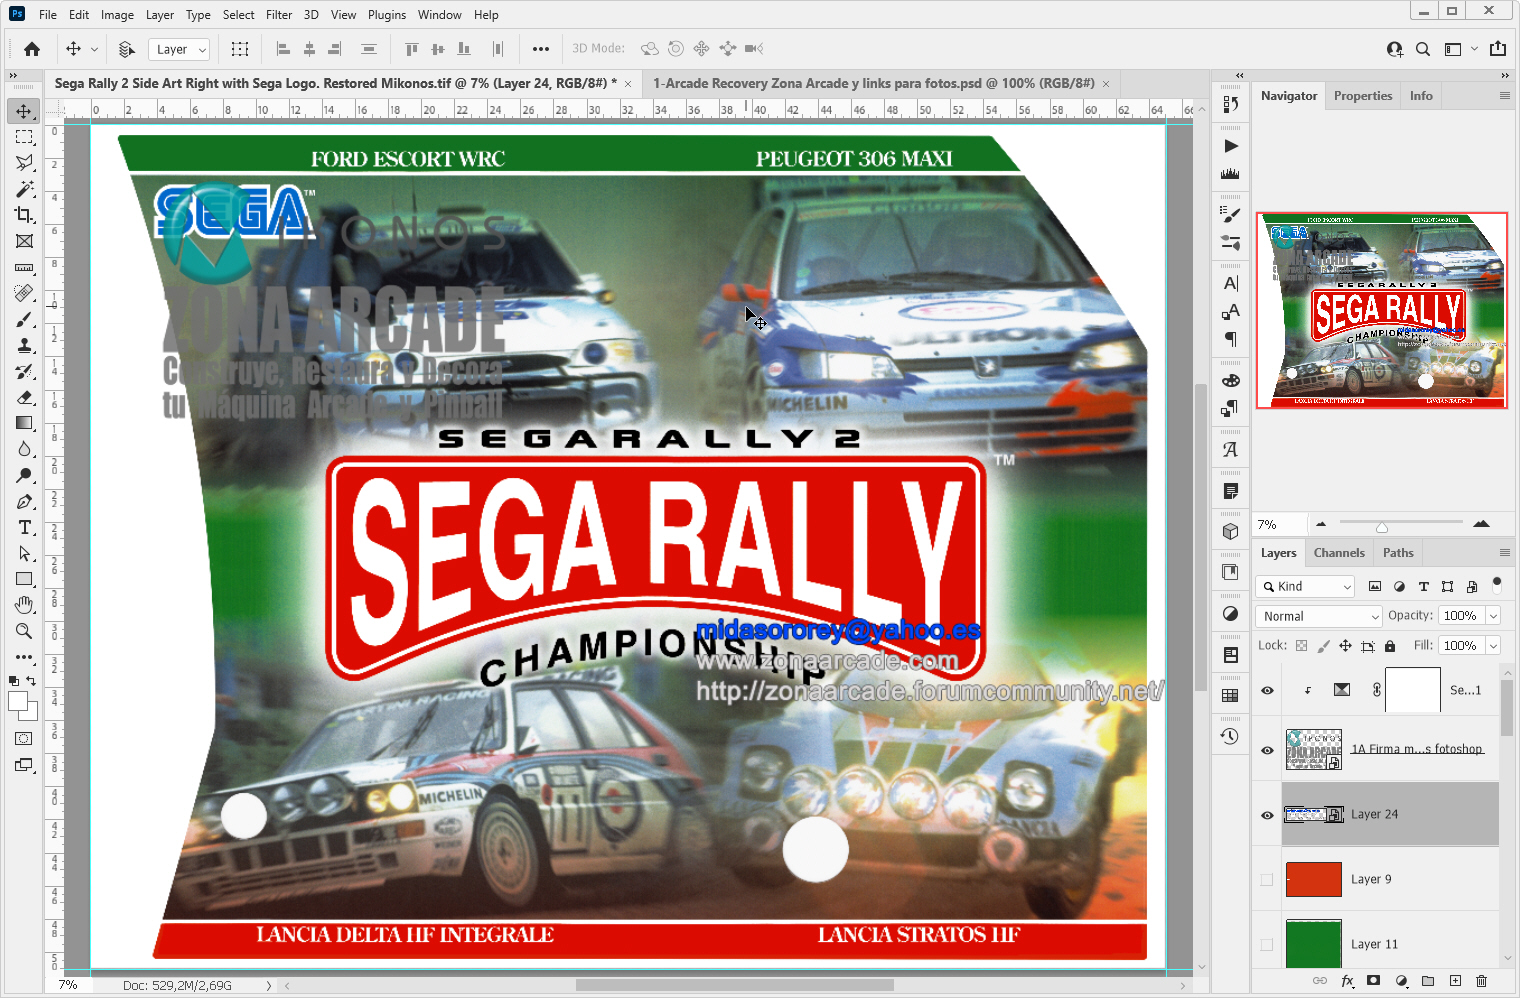 Sega-Rally-2-Right-Side-Art-SRT-1031-B-Restored-Mikonos1